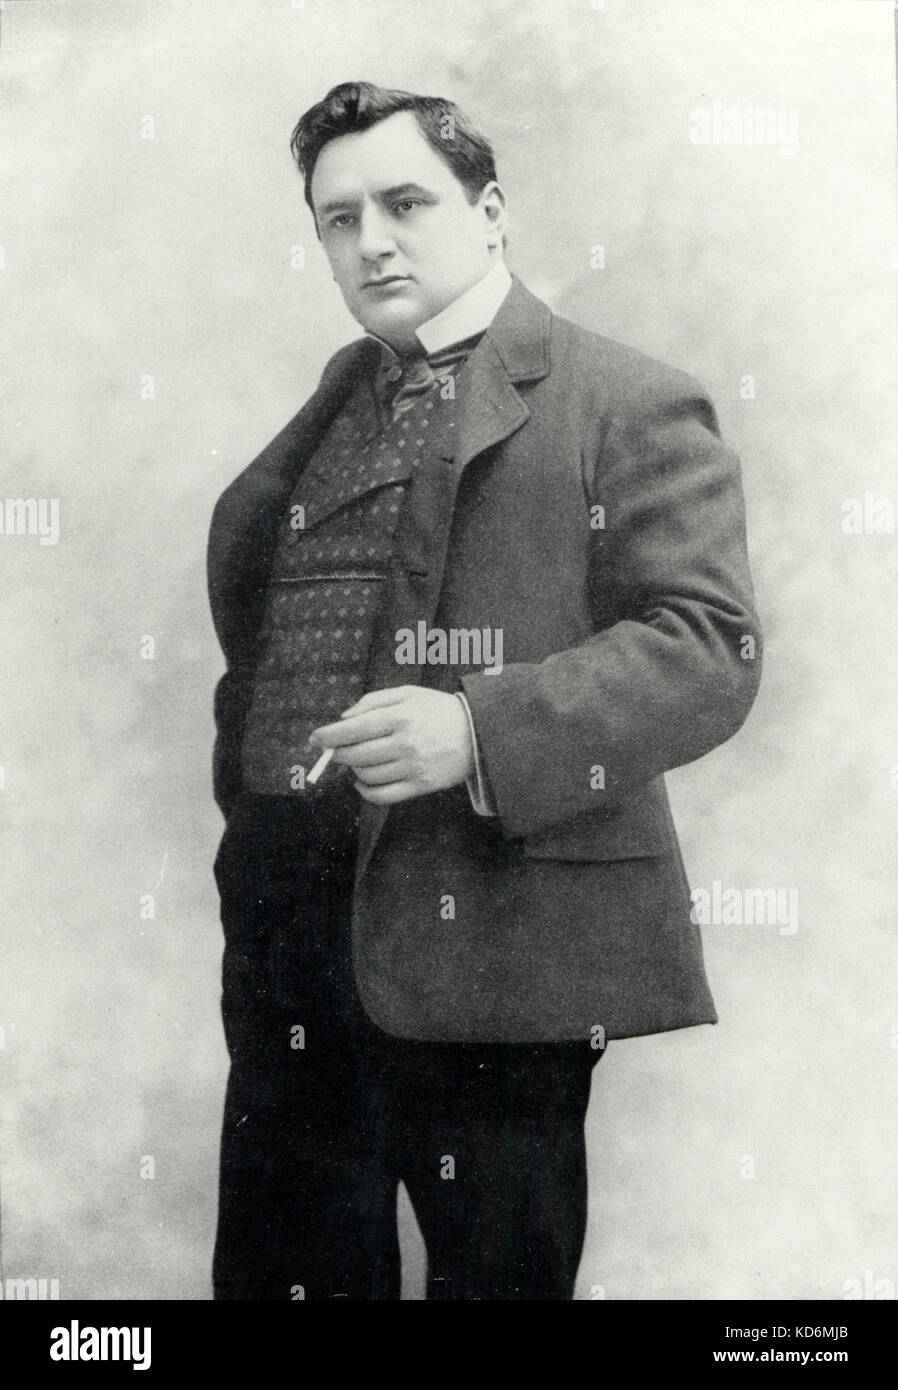 Giraldoni, Eugenio ritratto di lui il fumo c. 1900. Il baritono francese 1871 - 1924. In contrasto con la campagna antifumo della fine del XX secolo. Foto Stock